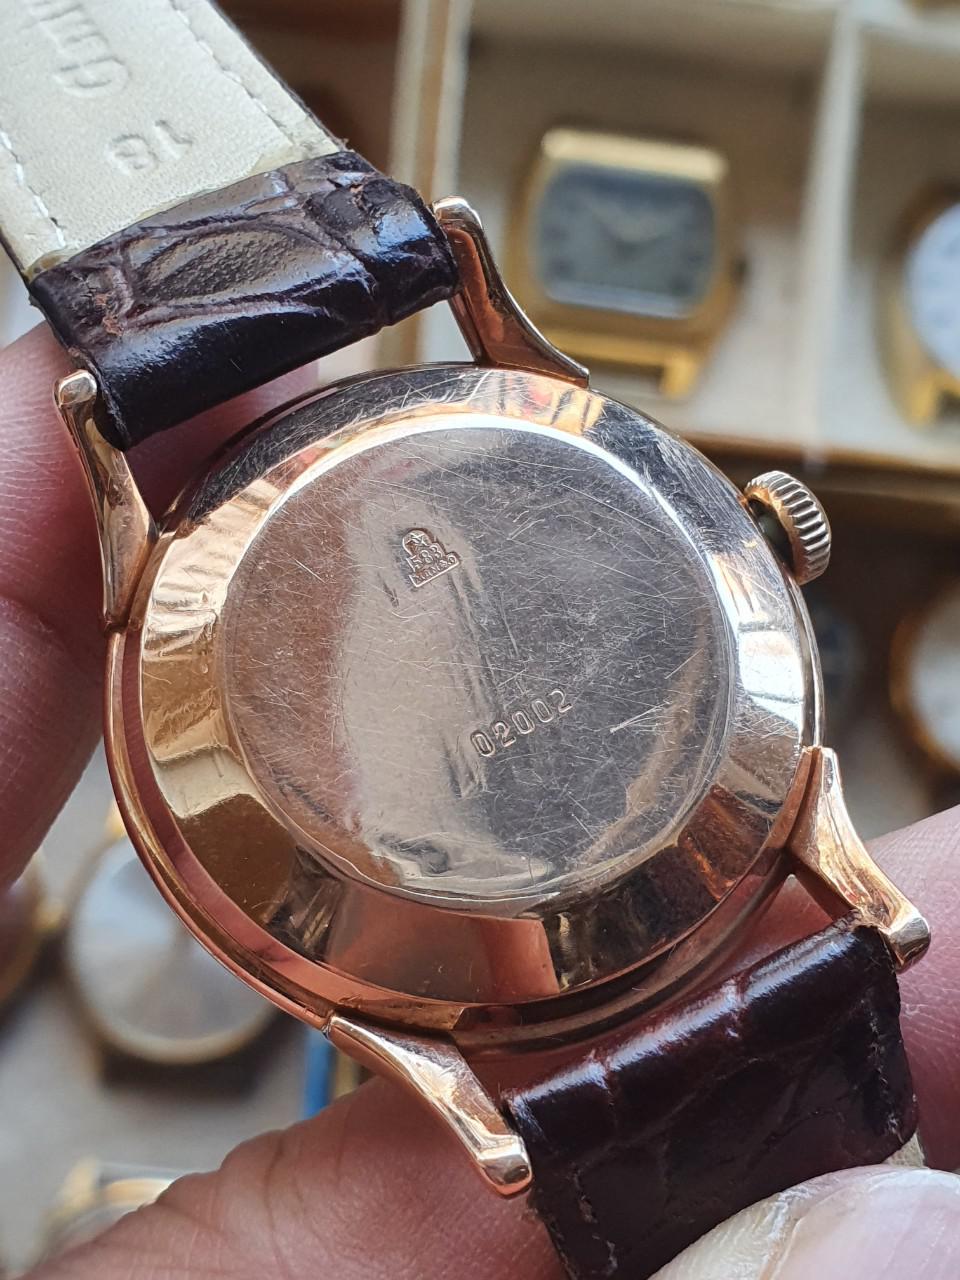 Đồng hồ vàng đúc 583 Rodina - Đồng hồ Automatic đầu tiên của Liên Xô